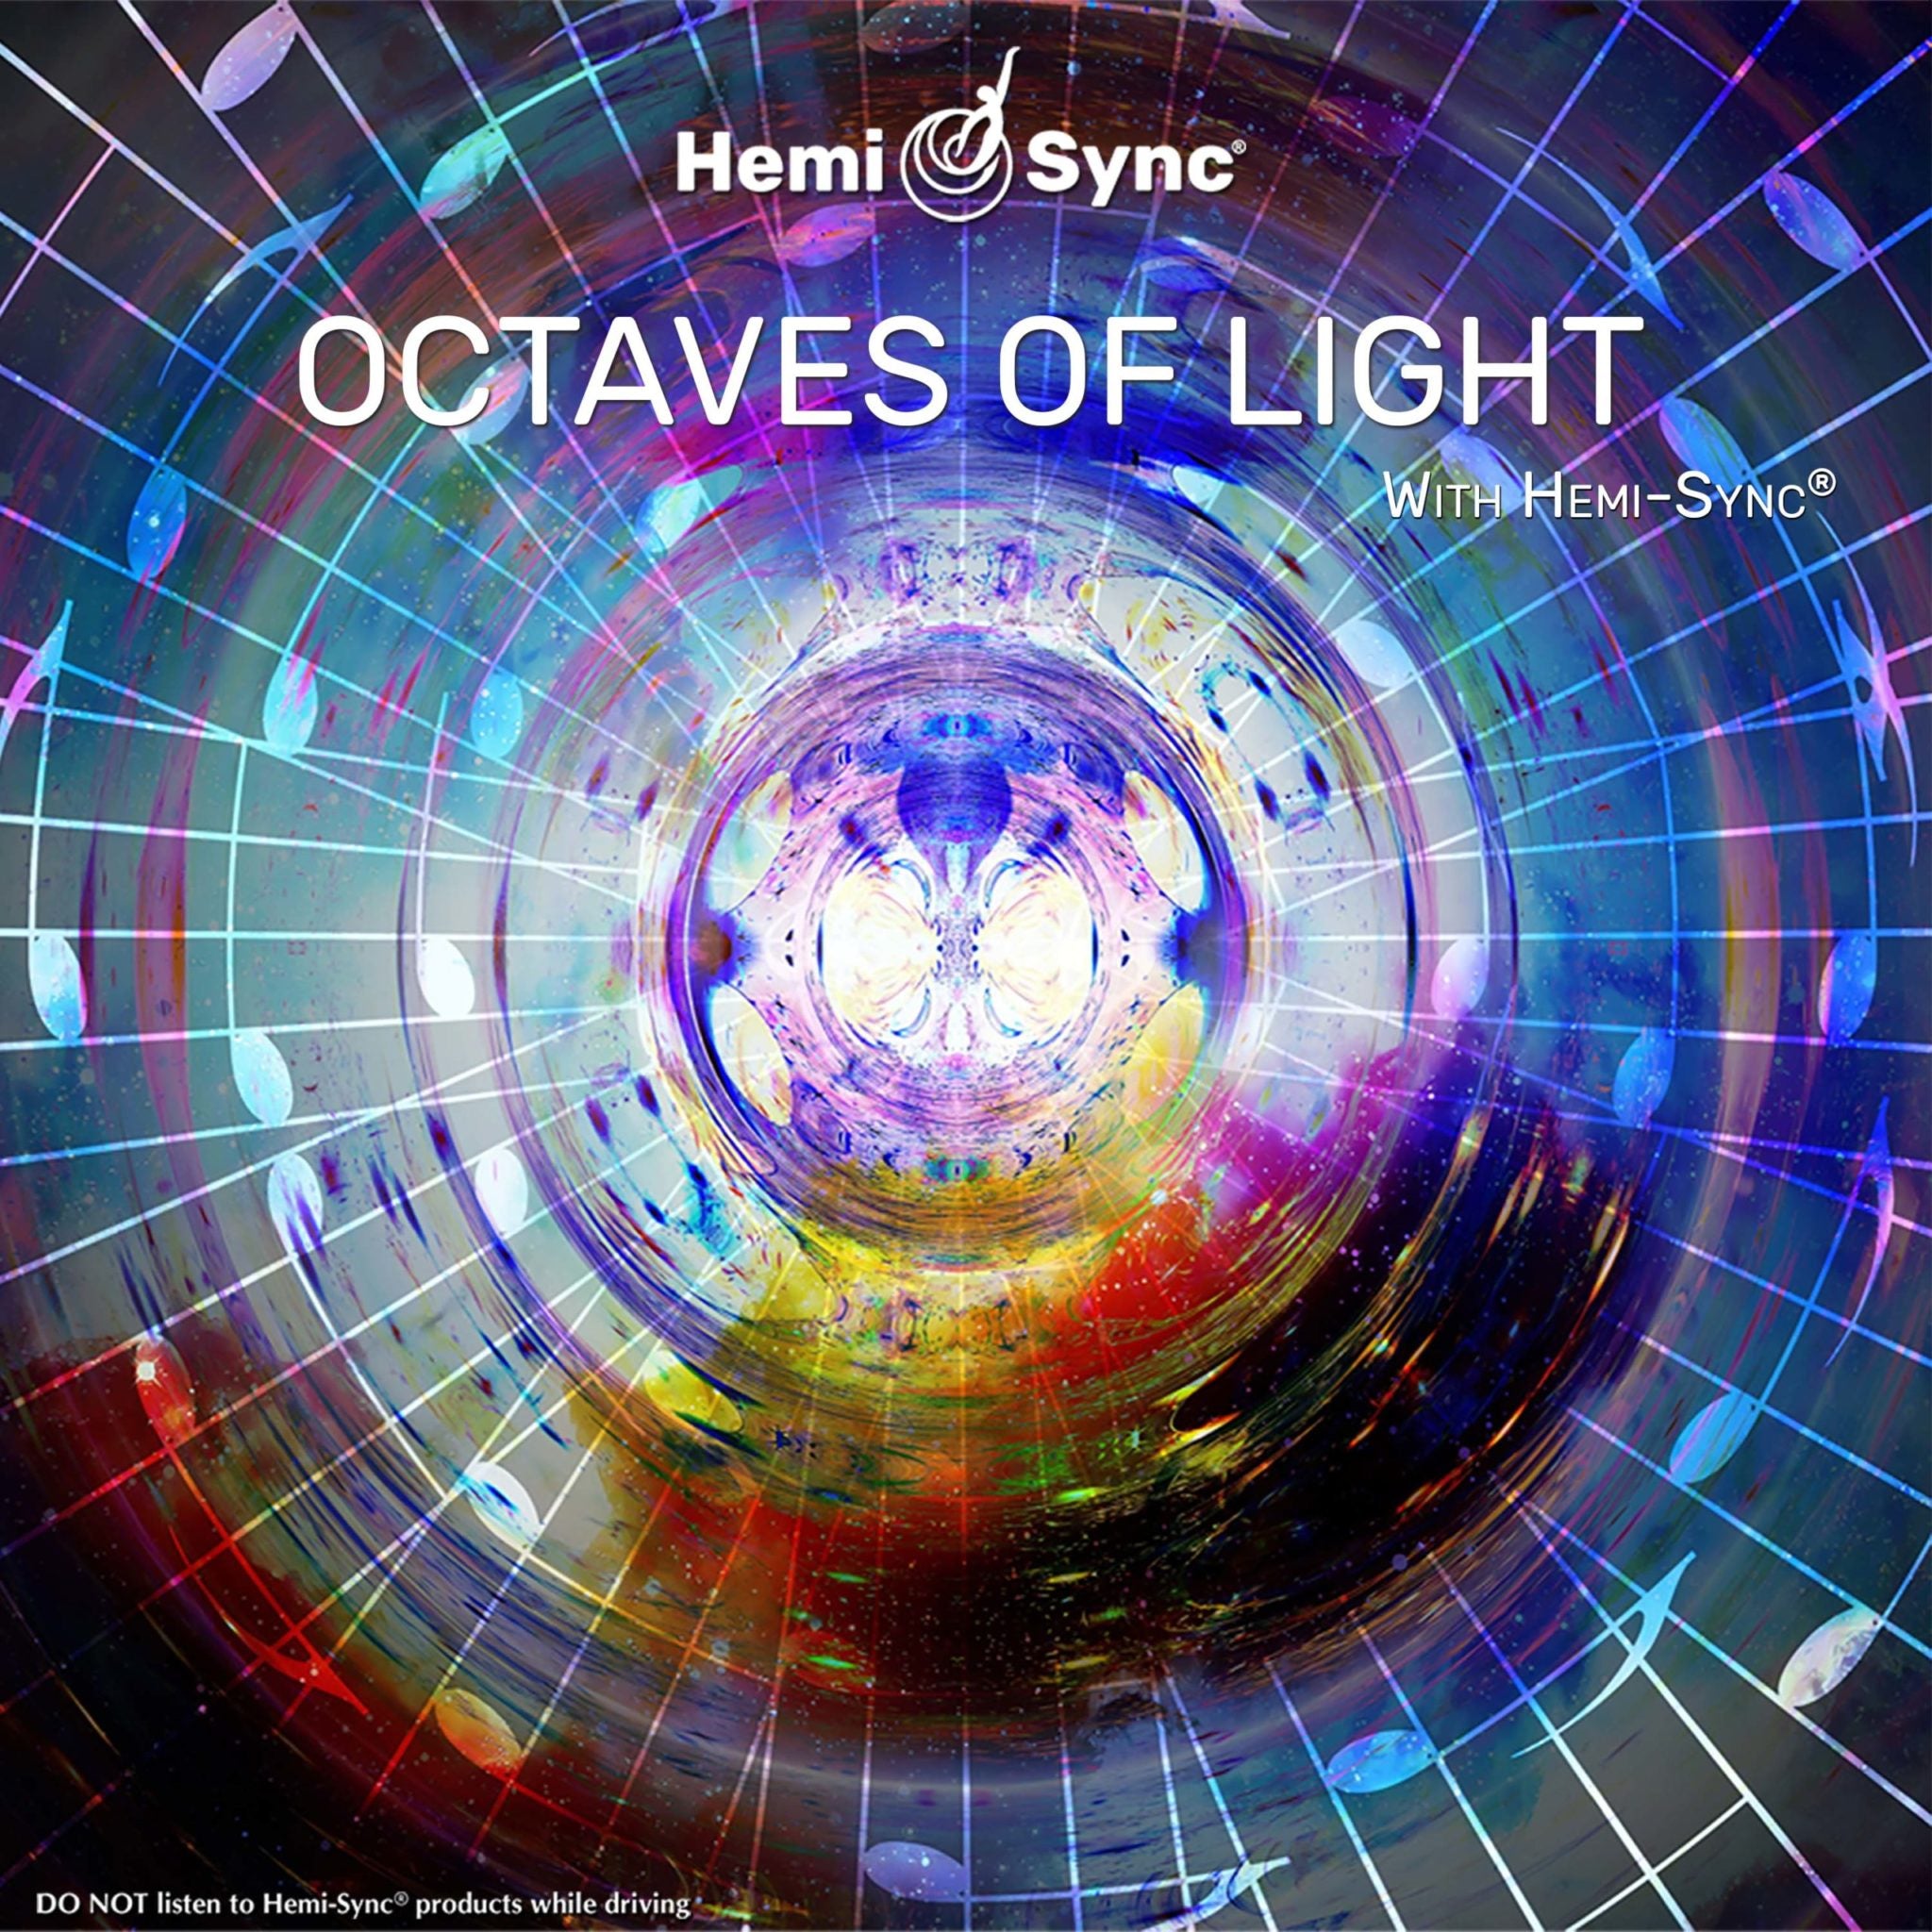 Octaves of Light